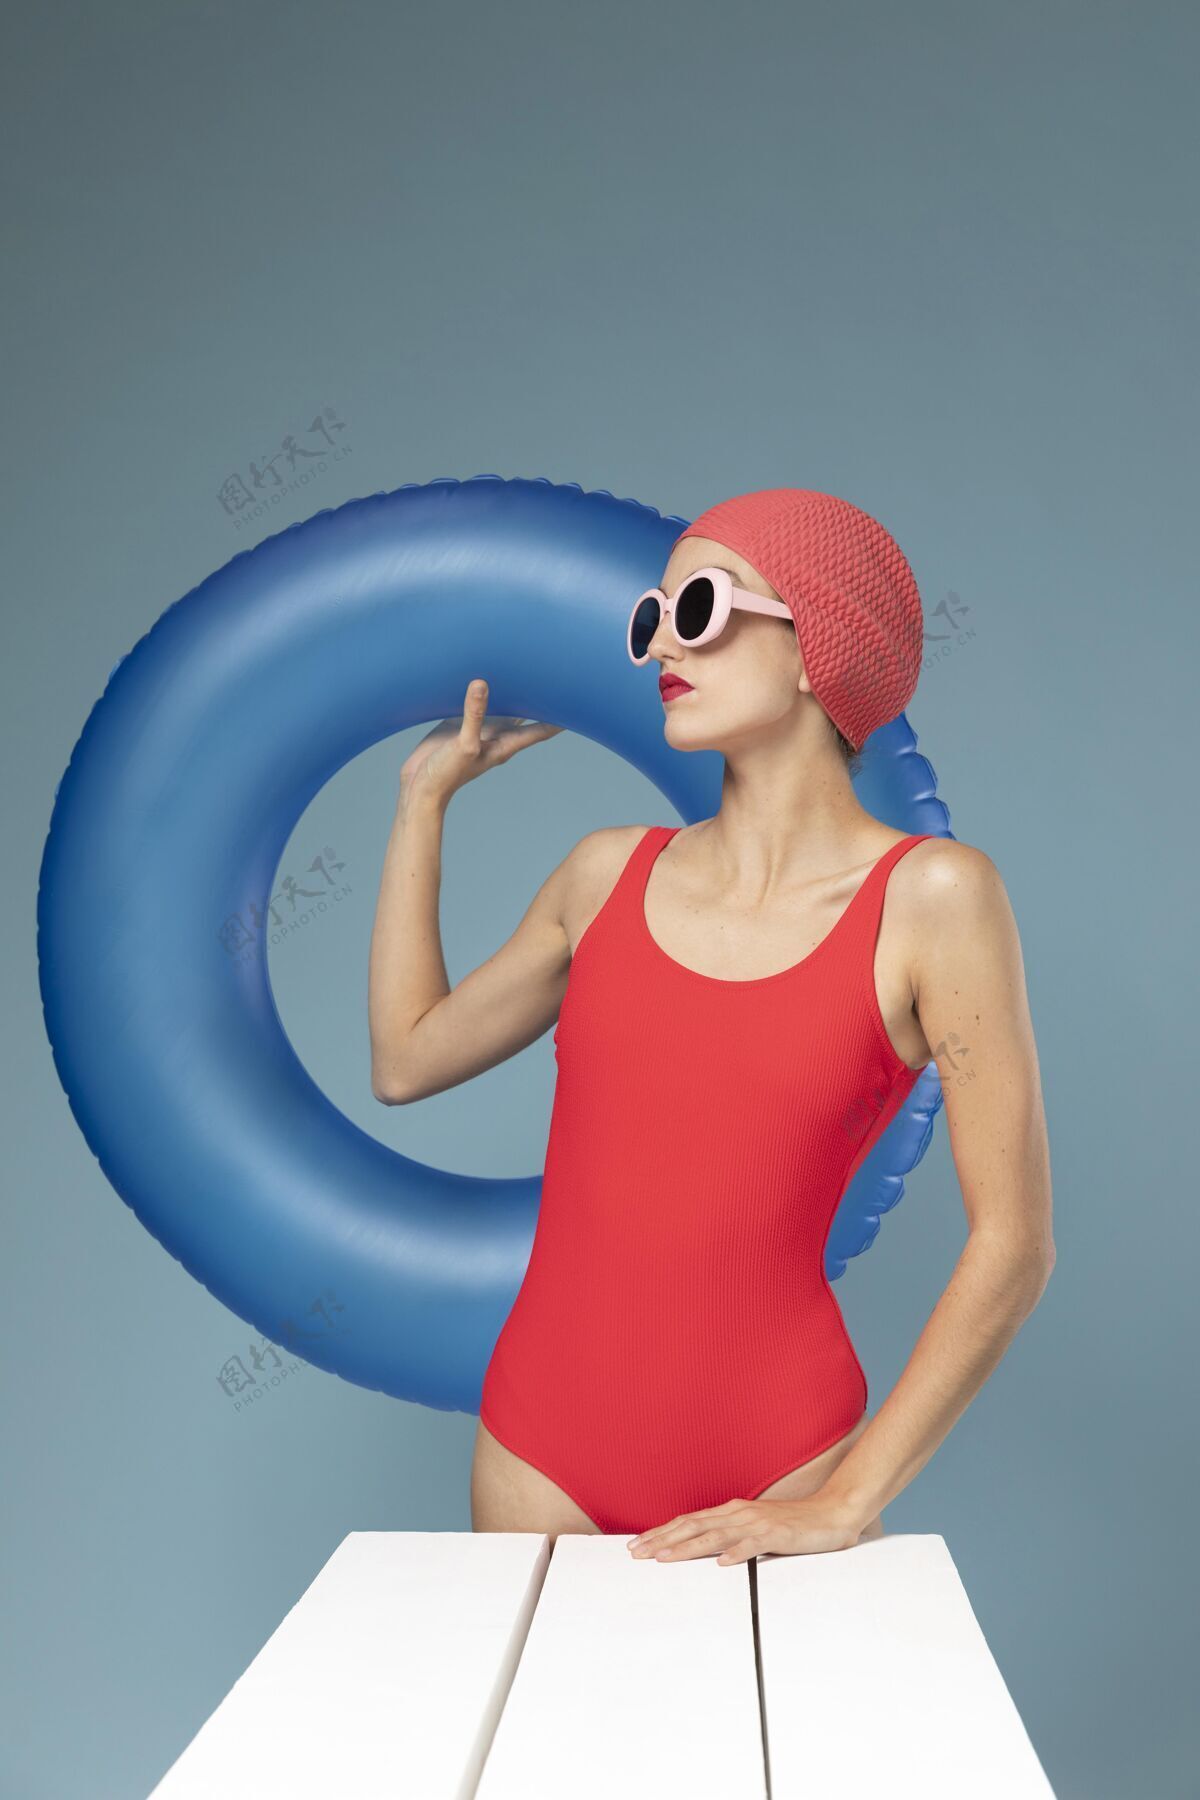 泳装穿着红色泳衣的美女姿势泳装海滩